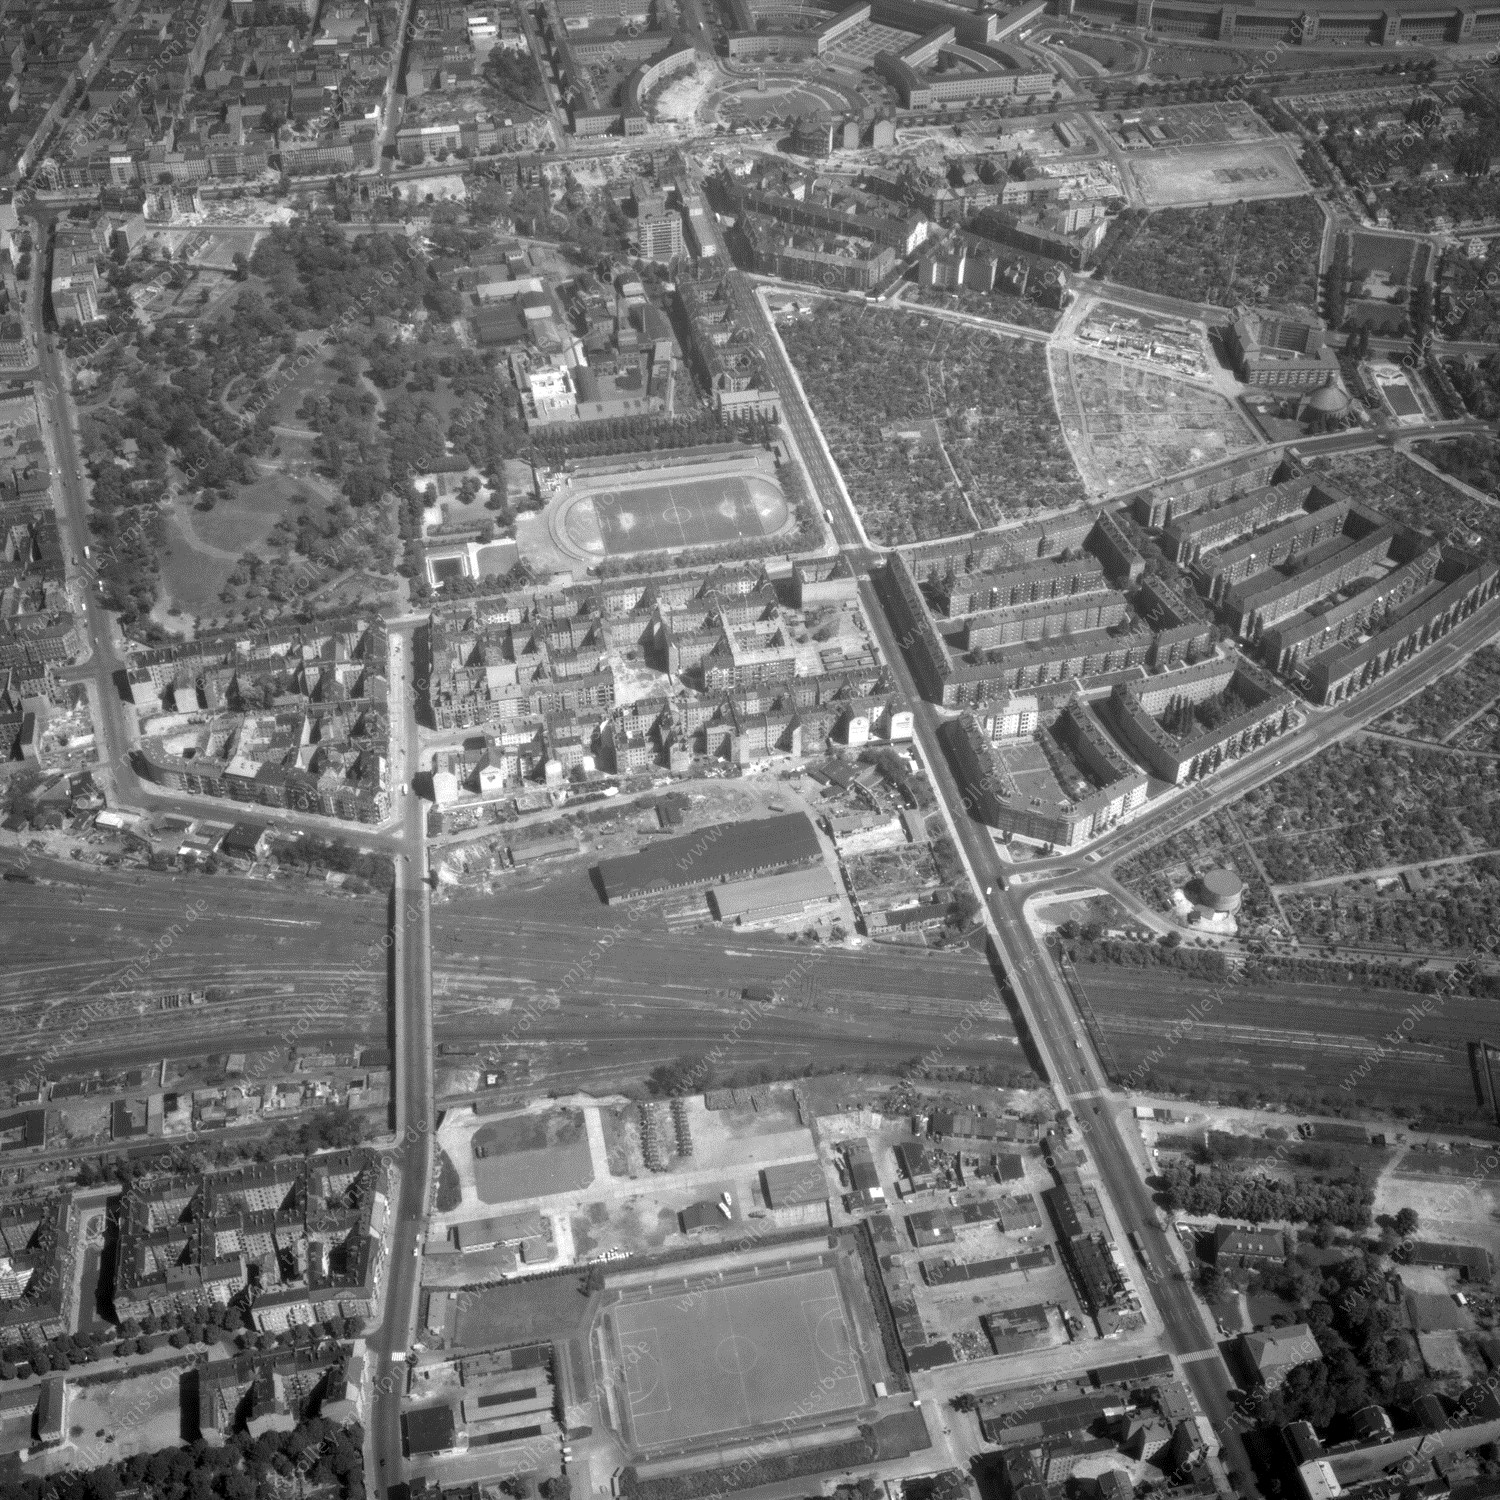 Alte Fotos und Luftbilder von Berlin - Luftbildaufnahme Nr. 01 - Historische Luftaufnahmen von West-Berlin aus dem Jahr 1954 - Flugstrecke Hotel